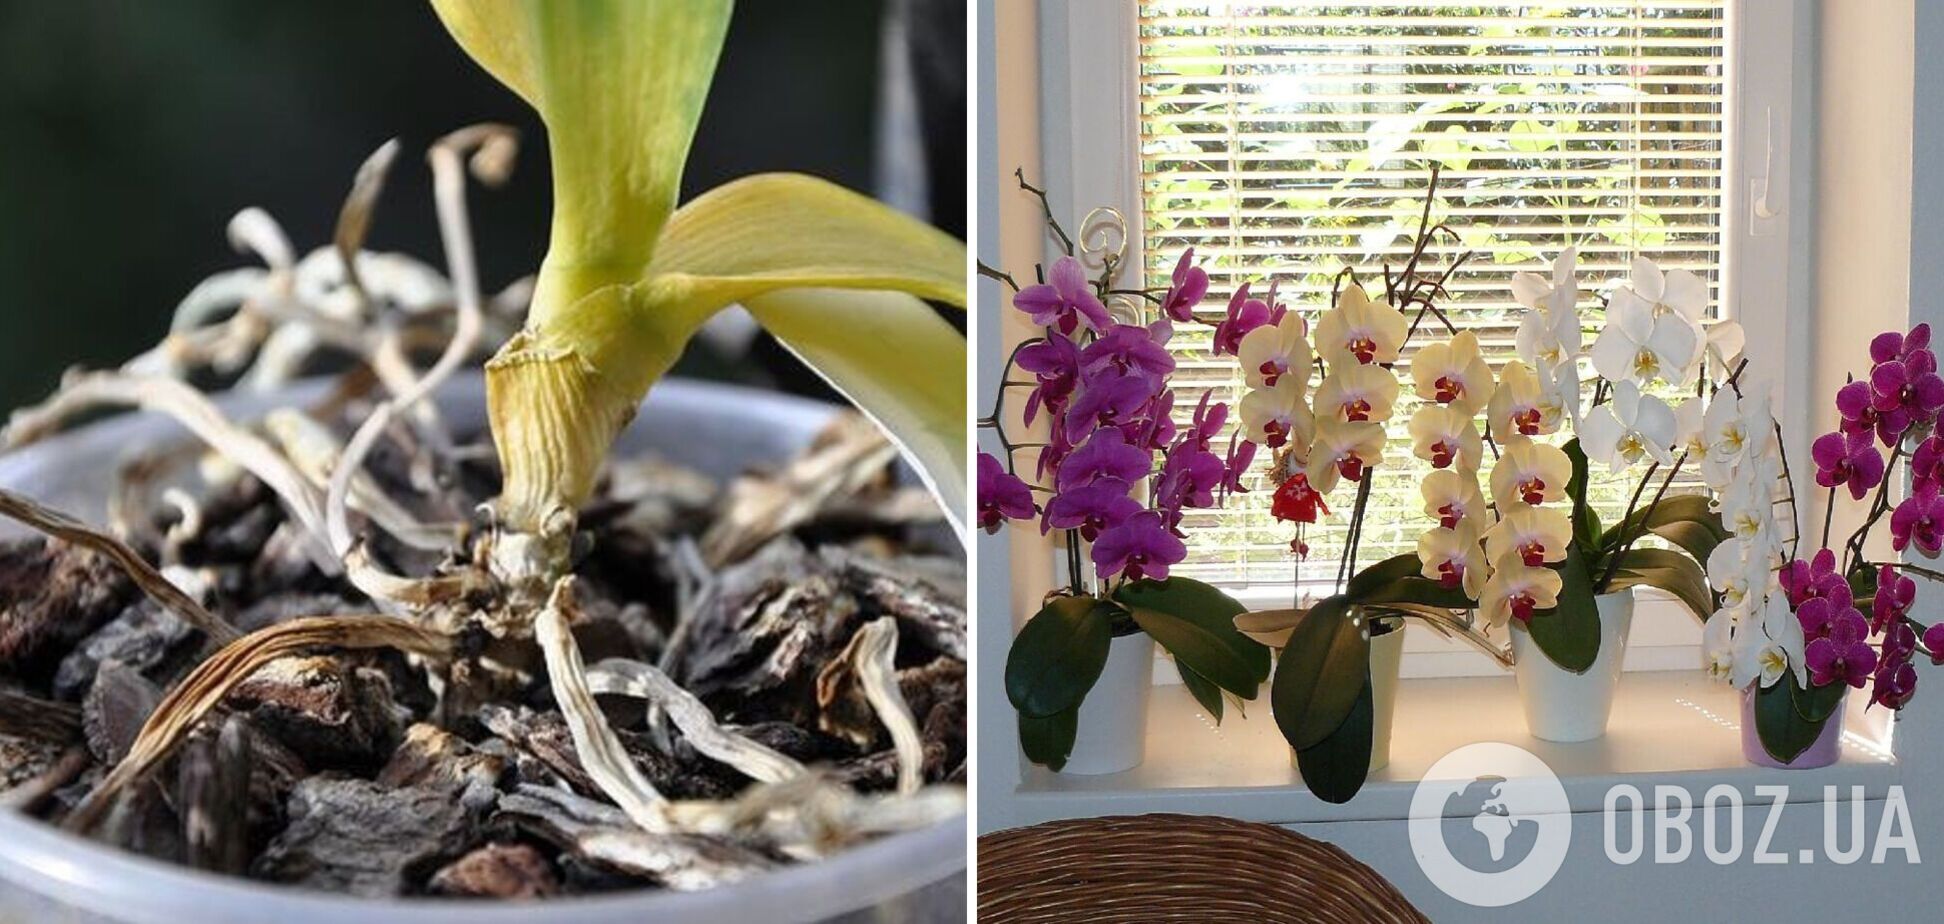 Як врятувати суху орхідею за лічені дні: рослина знову розцвіте